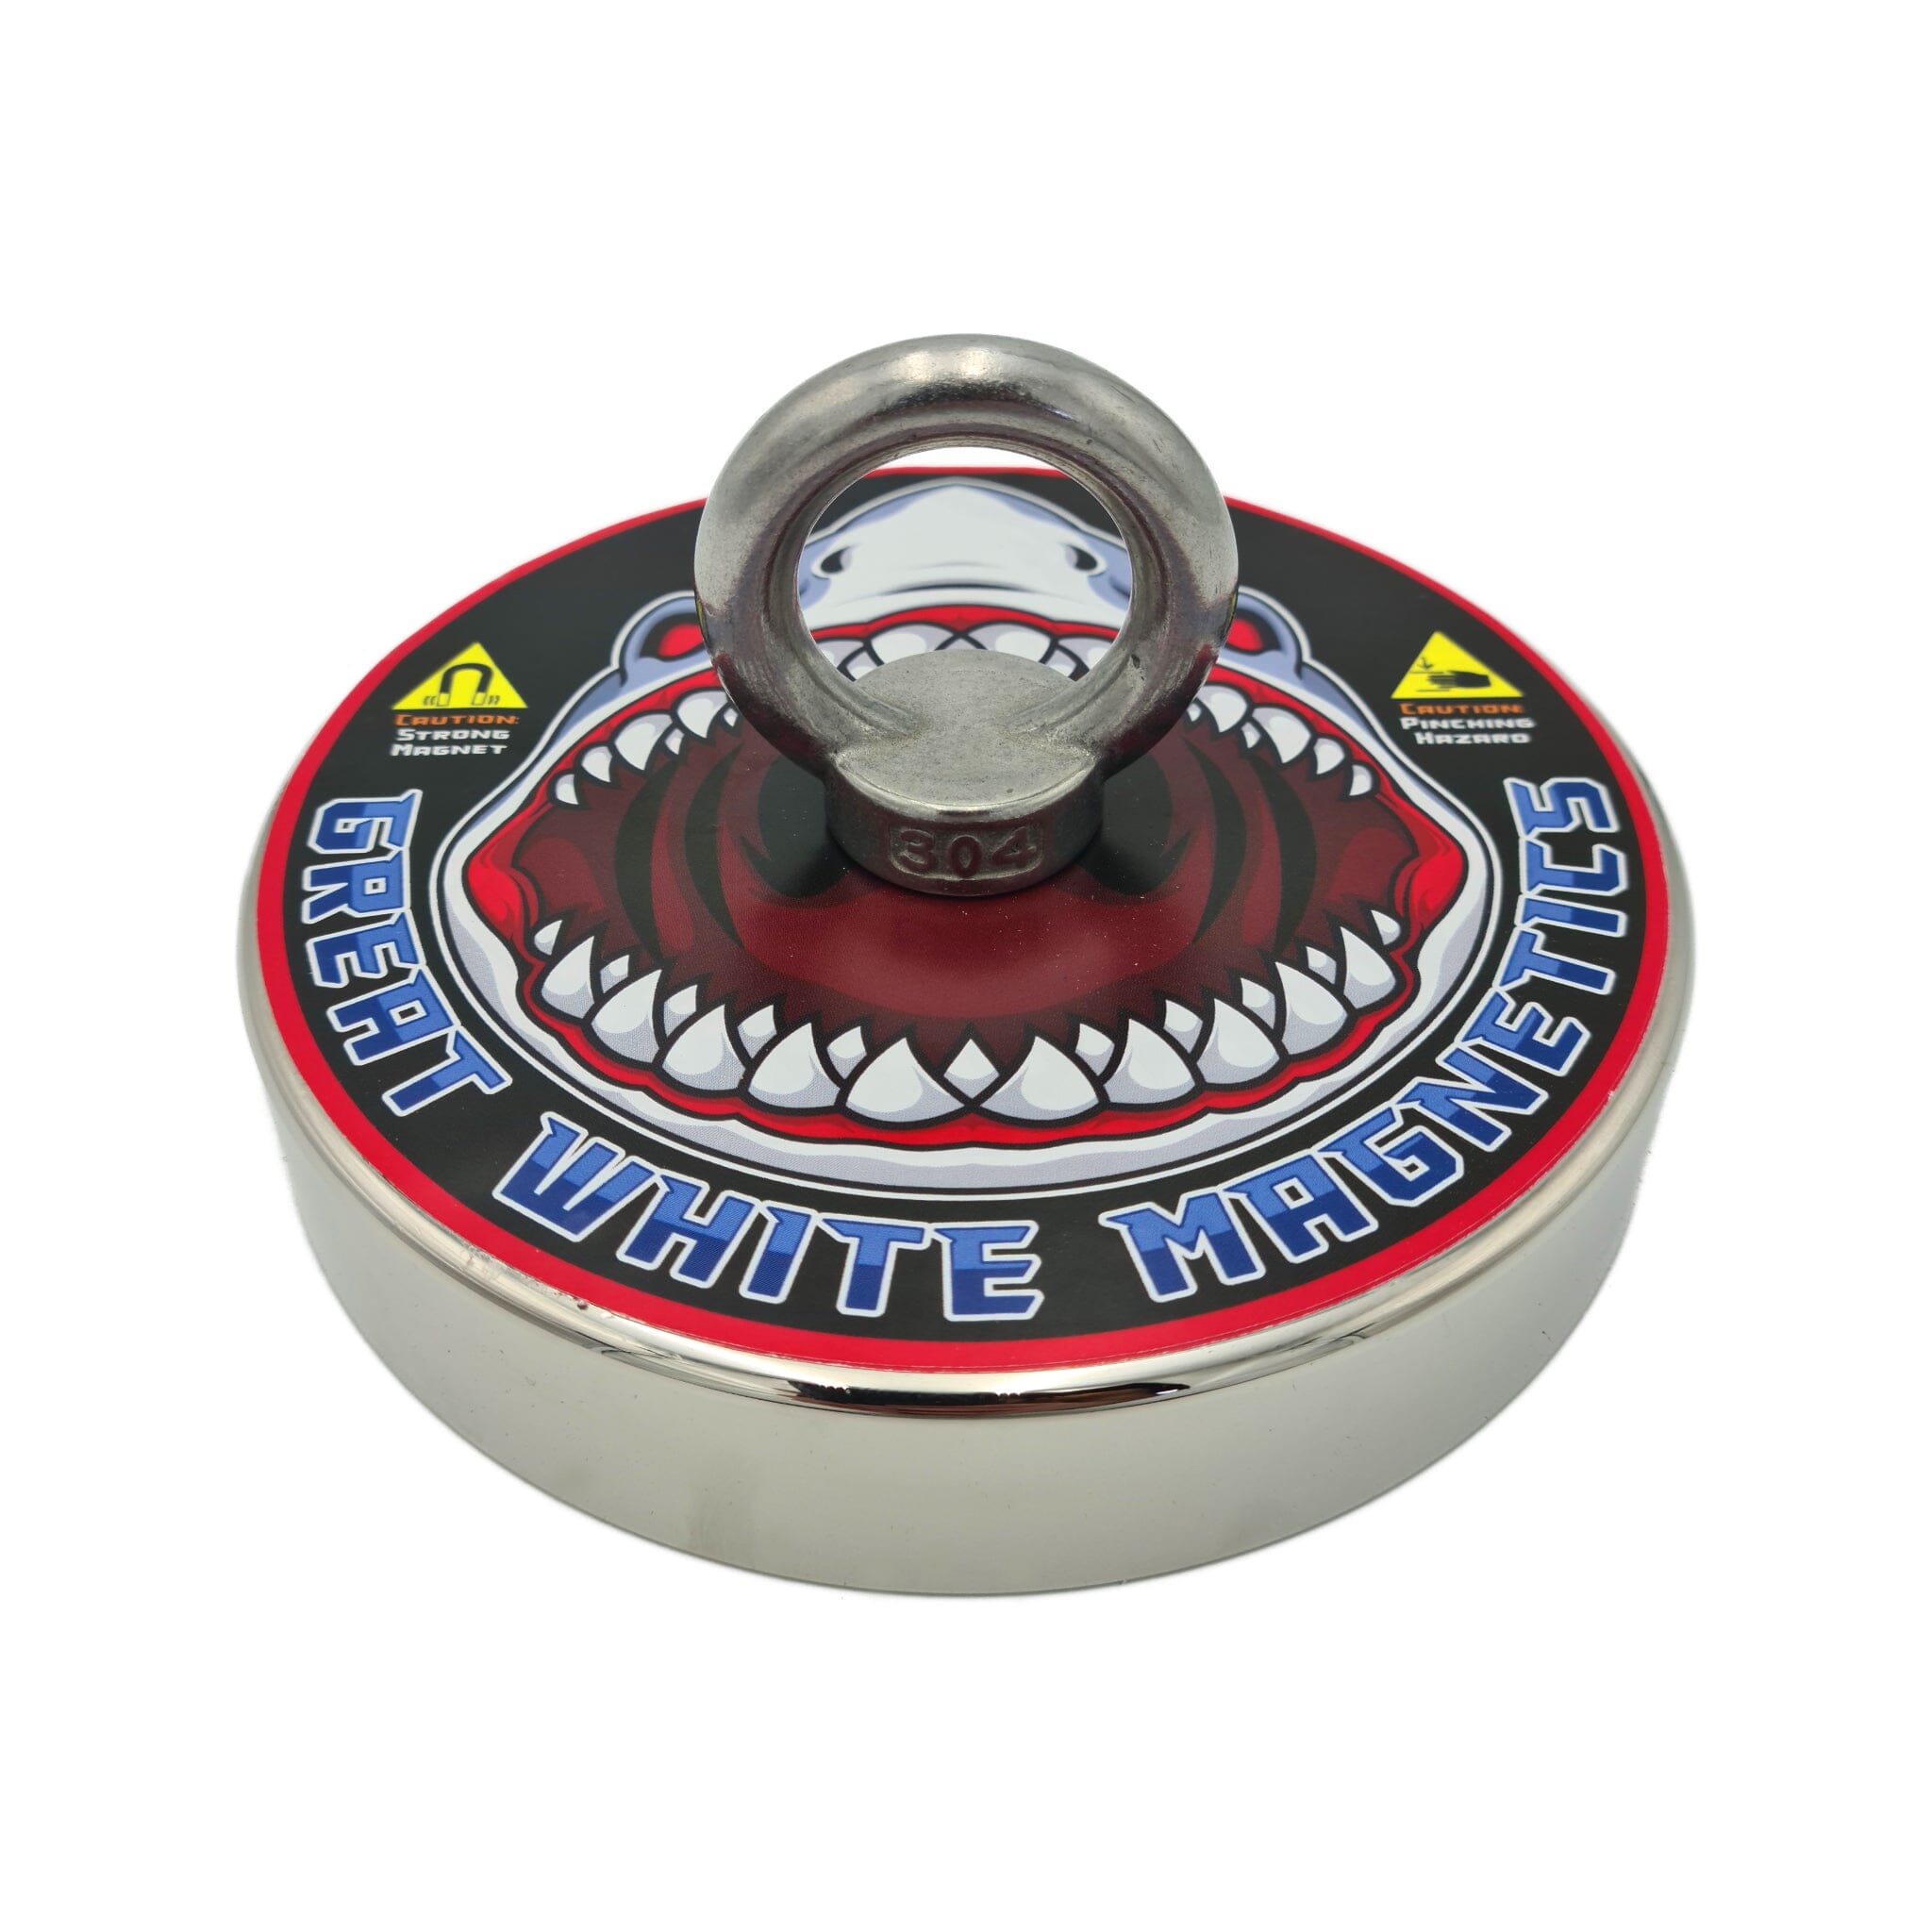 Megalodon - 1 Ton Expert Magnet Fishing Kit